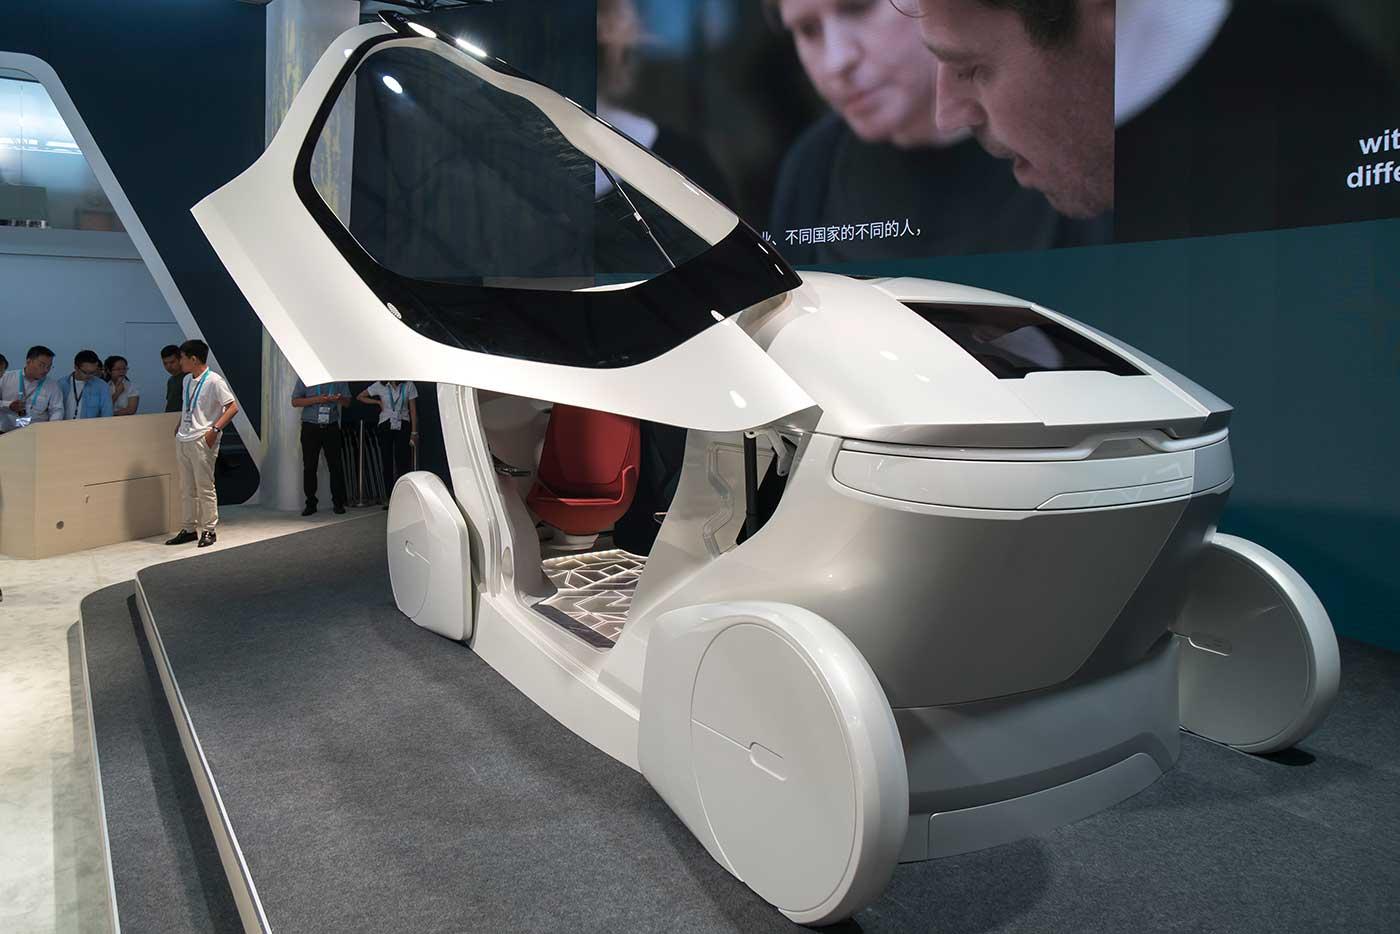 Det här är InMotion – en glimt av framtidens bil.